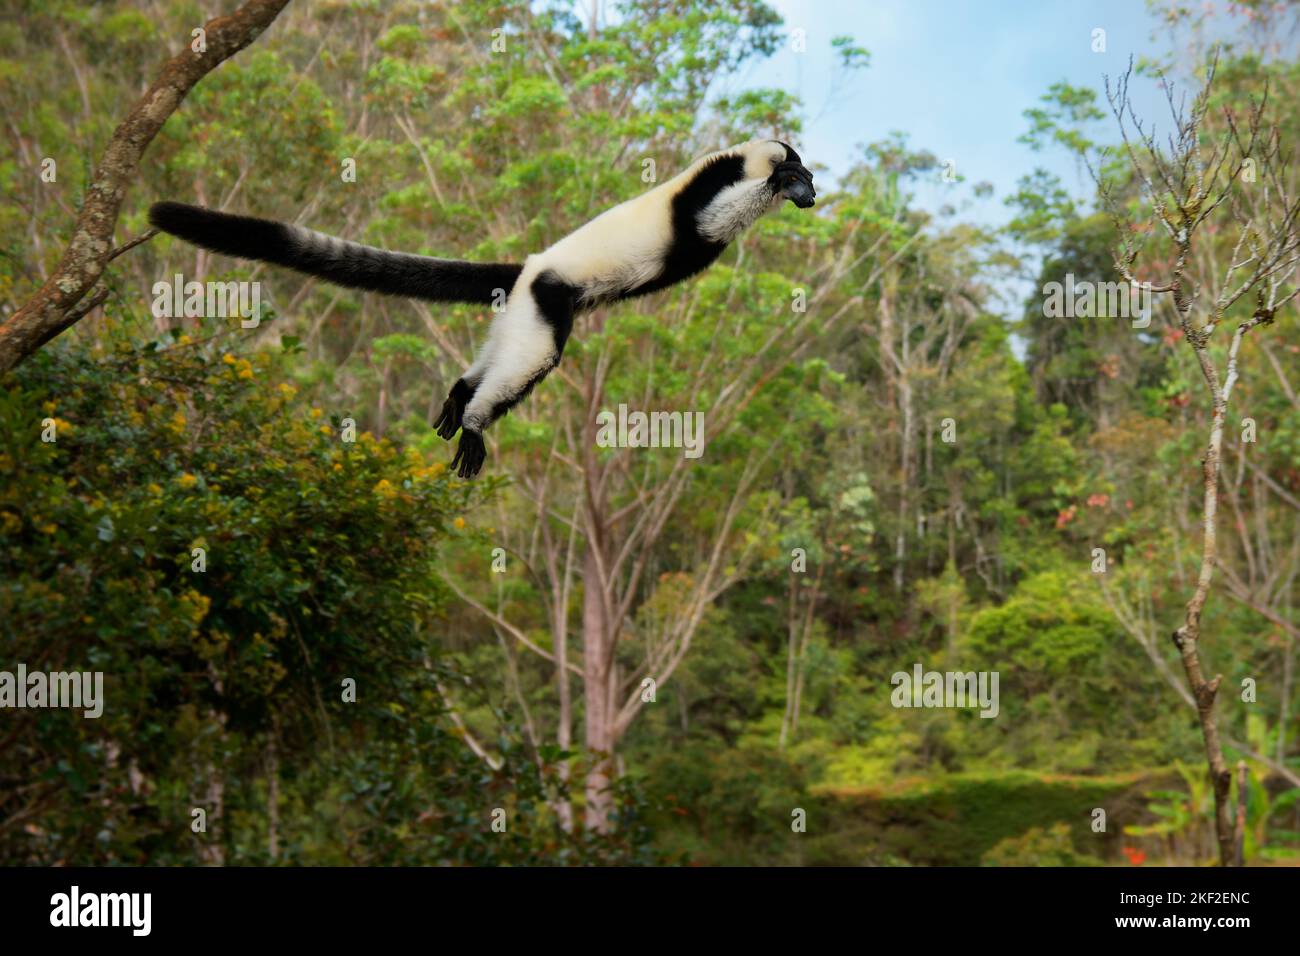 Lemur blanco y negro - Varecia variegata Especie en peligro de extinción de lemur resquebrado, endémica de Madagascar, mamífero saltante y trepador con relación a m. Foto de stock